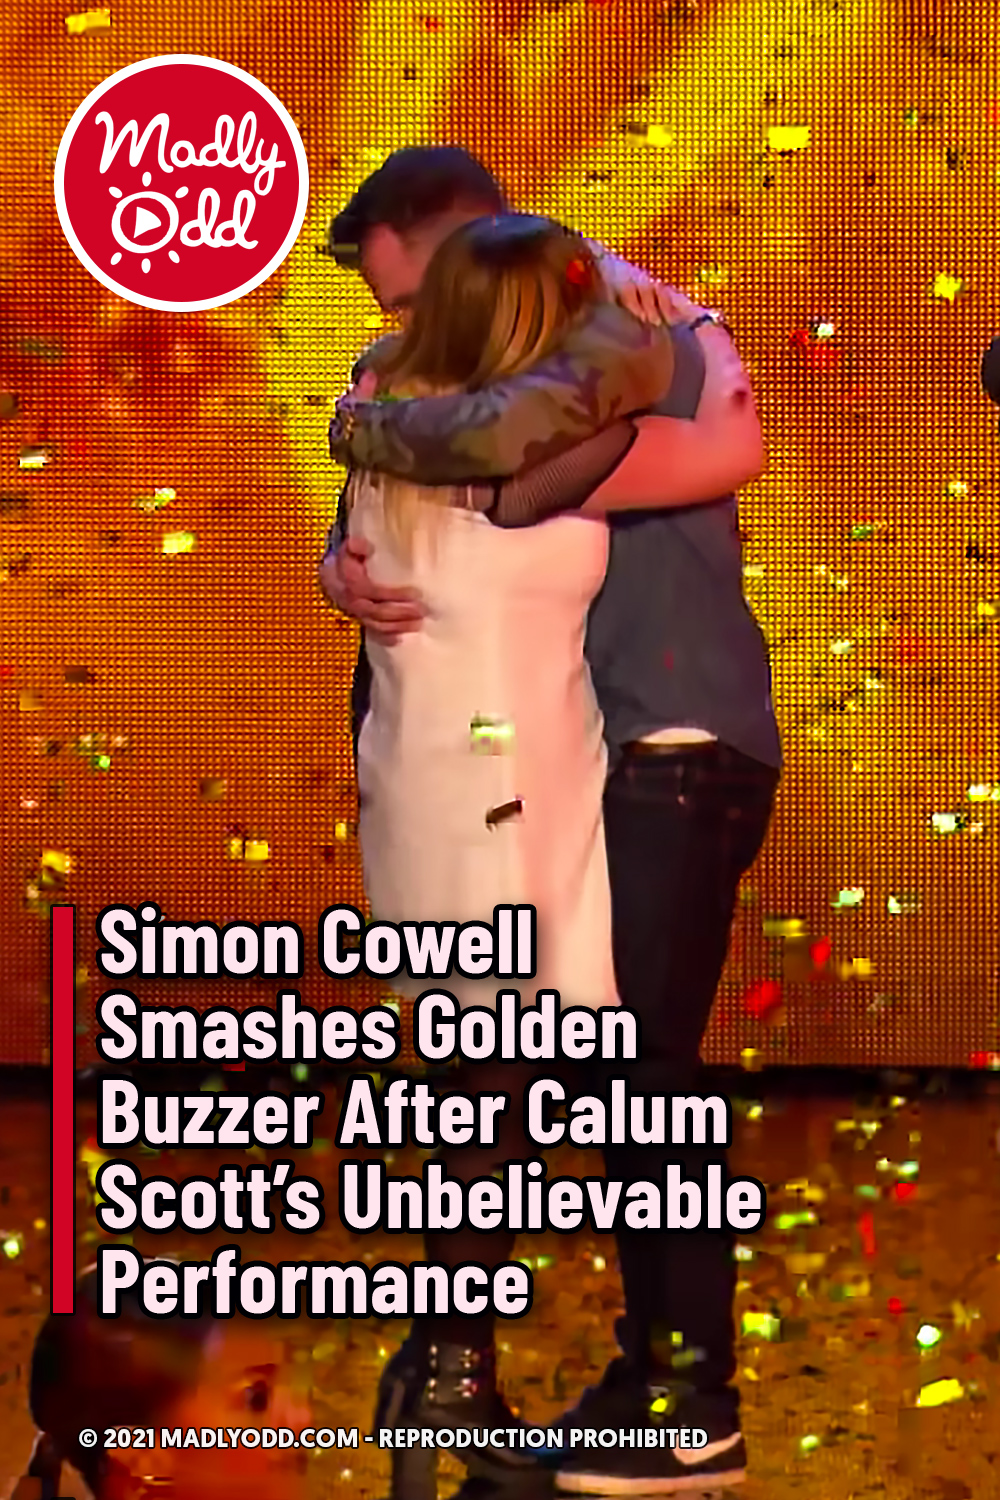 Simon Cowell Smashes Golden Buzzer After Calum Scott’s Unbelievable Performance